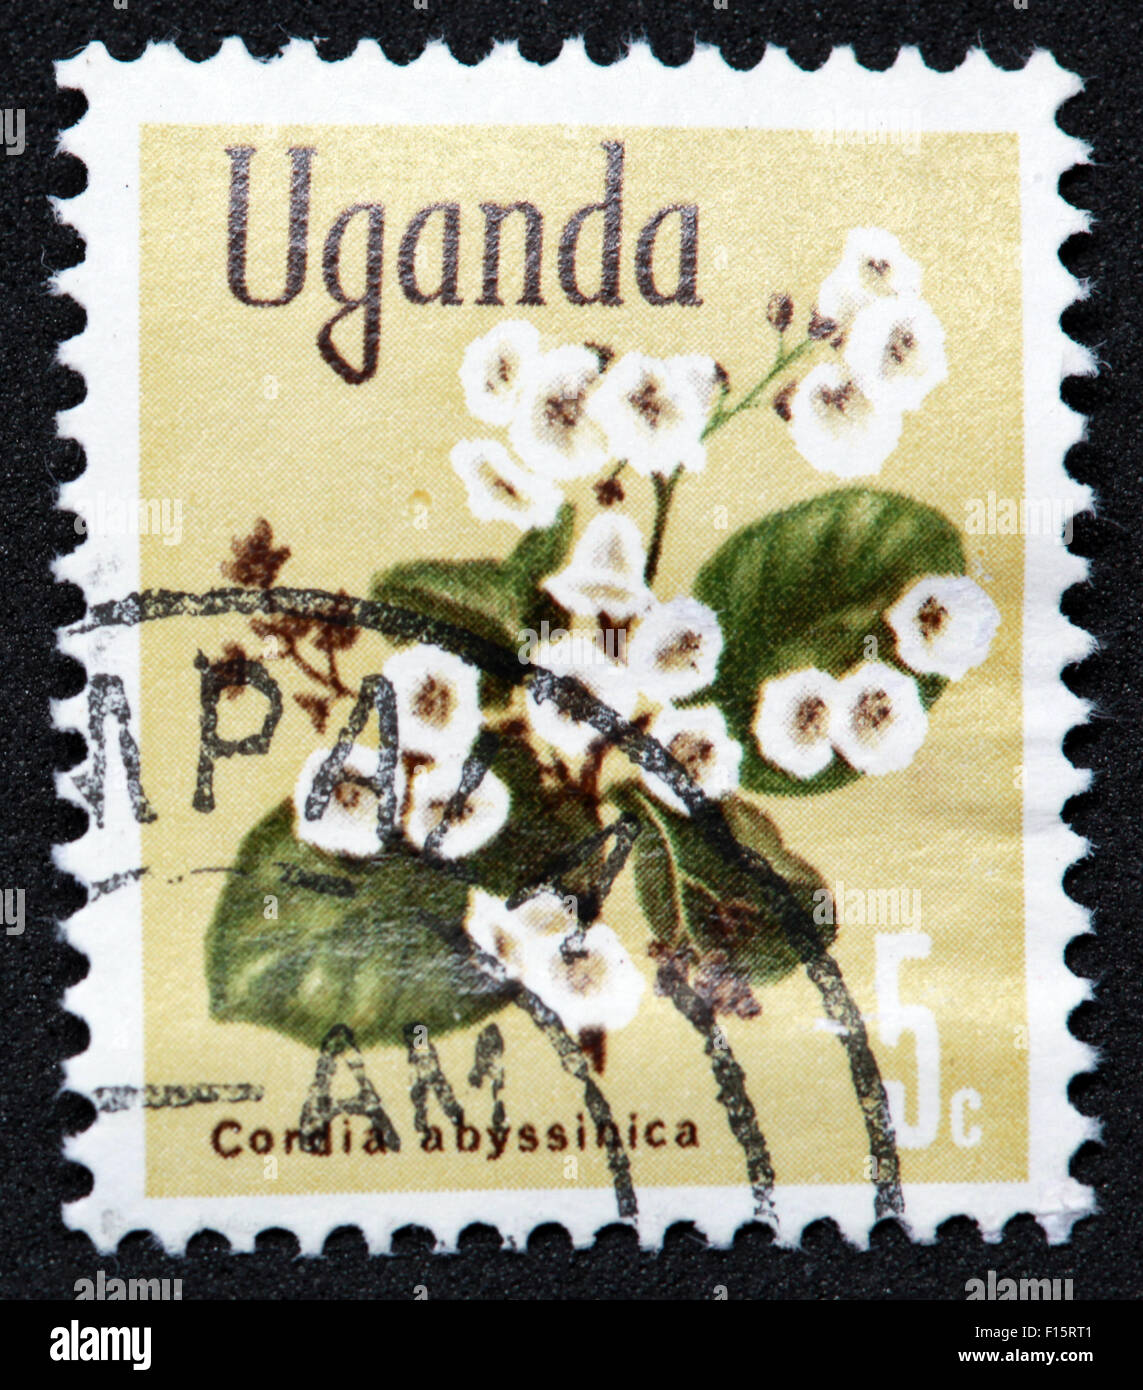 L'Ouganda 5c fleur usine Condia abyssinica Stamp Banque D'Images